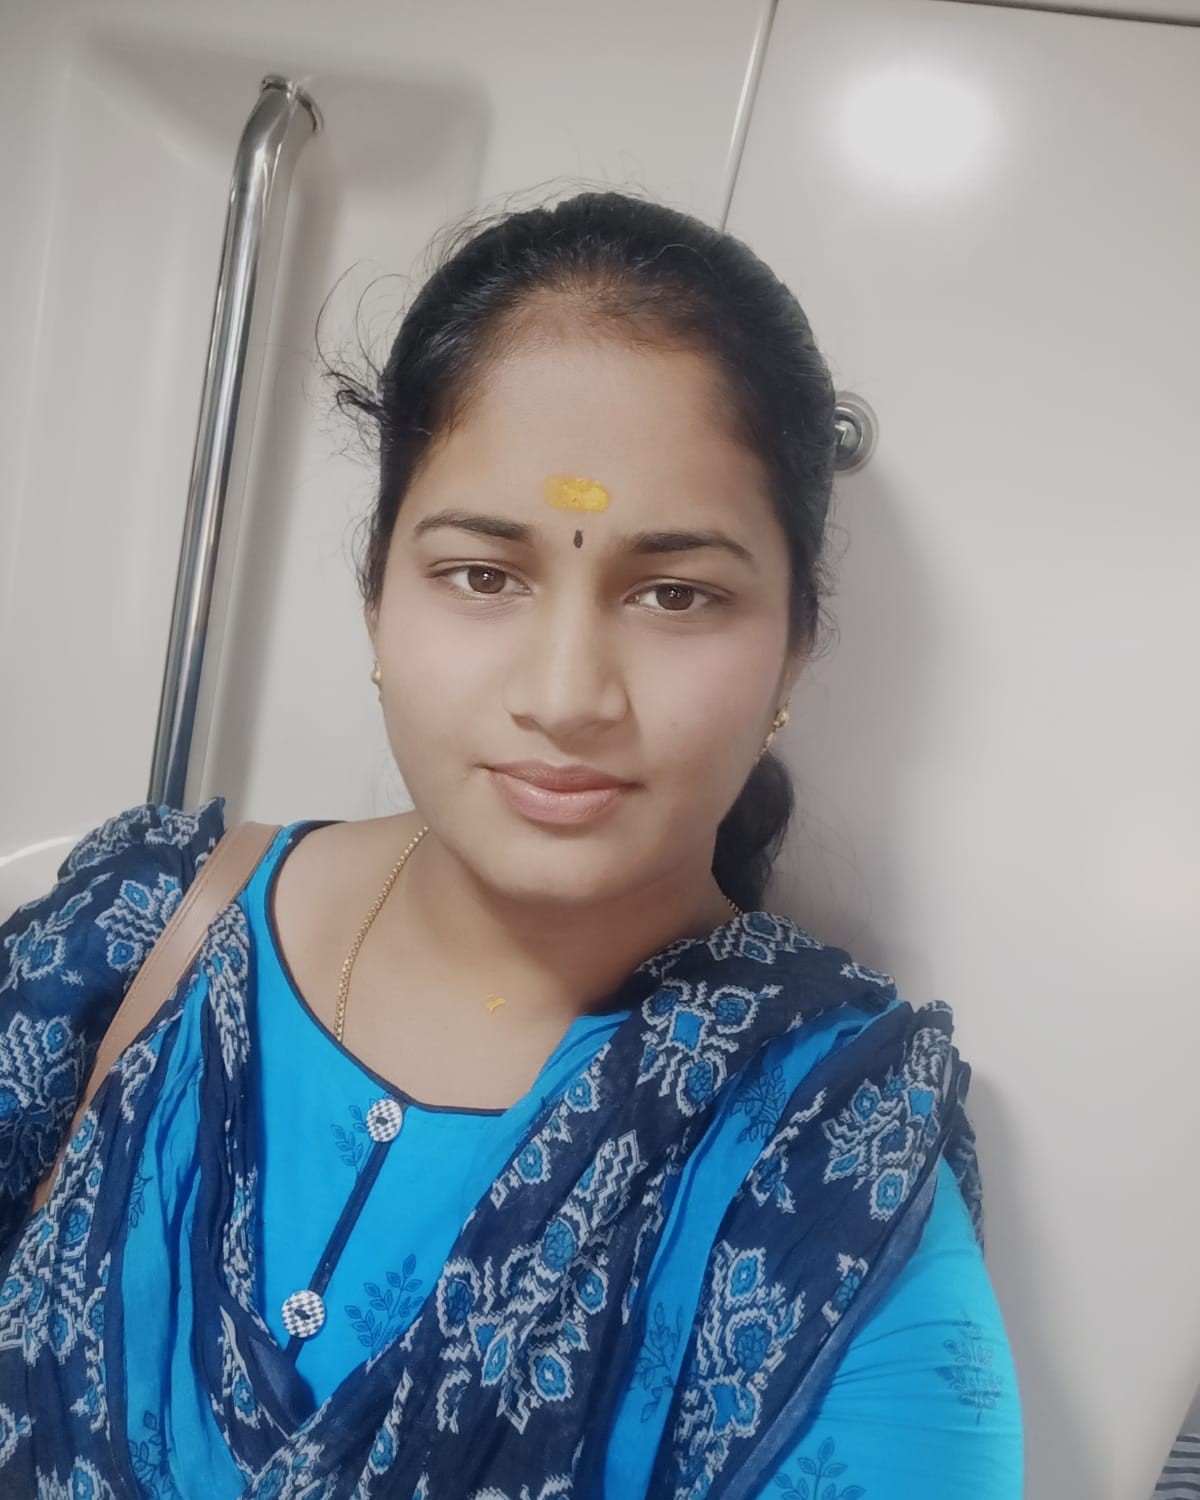 Veena runs Kari dosa food cart in Bengaluru